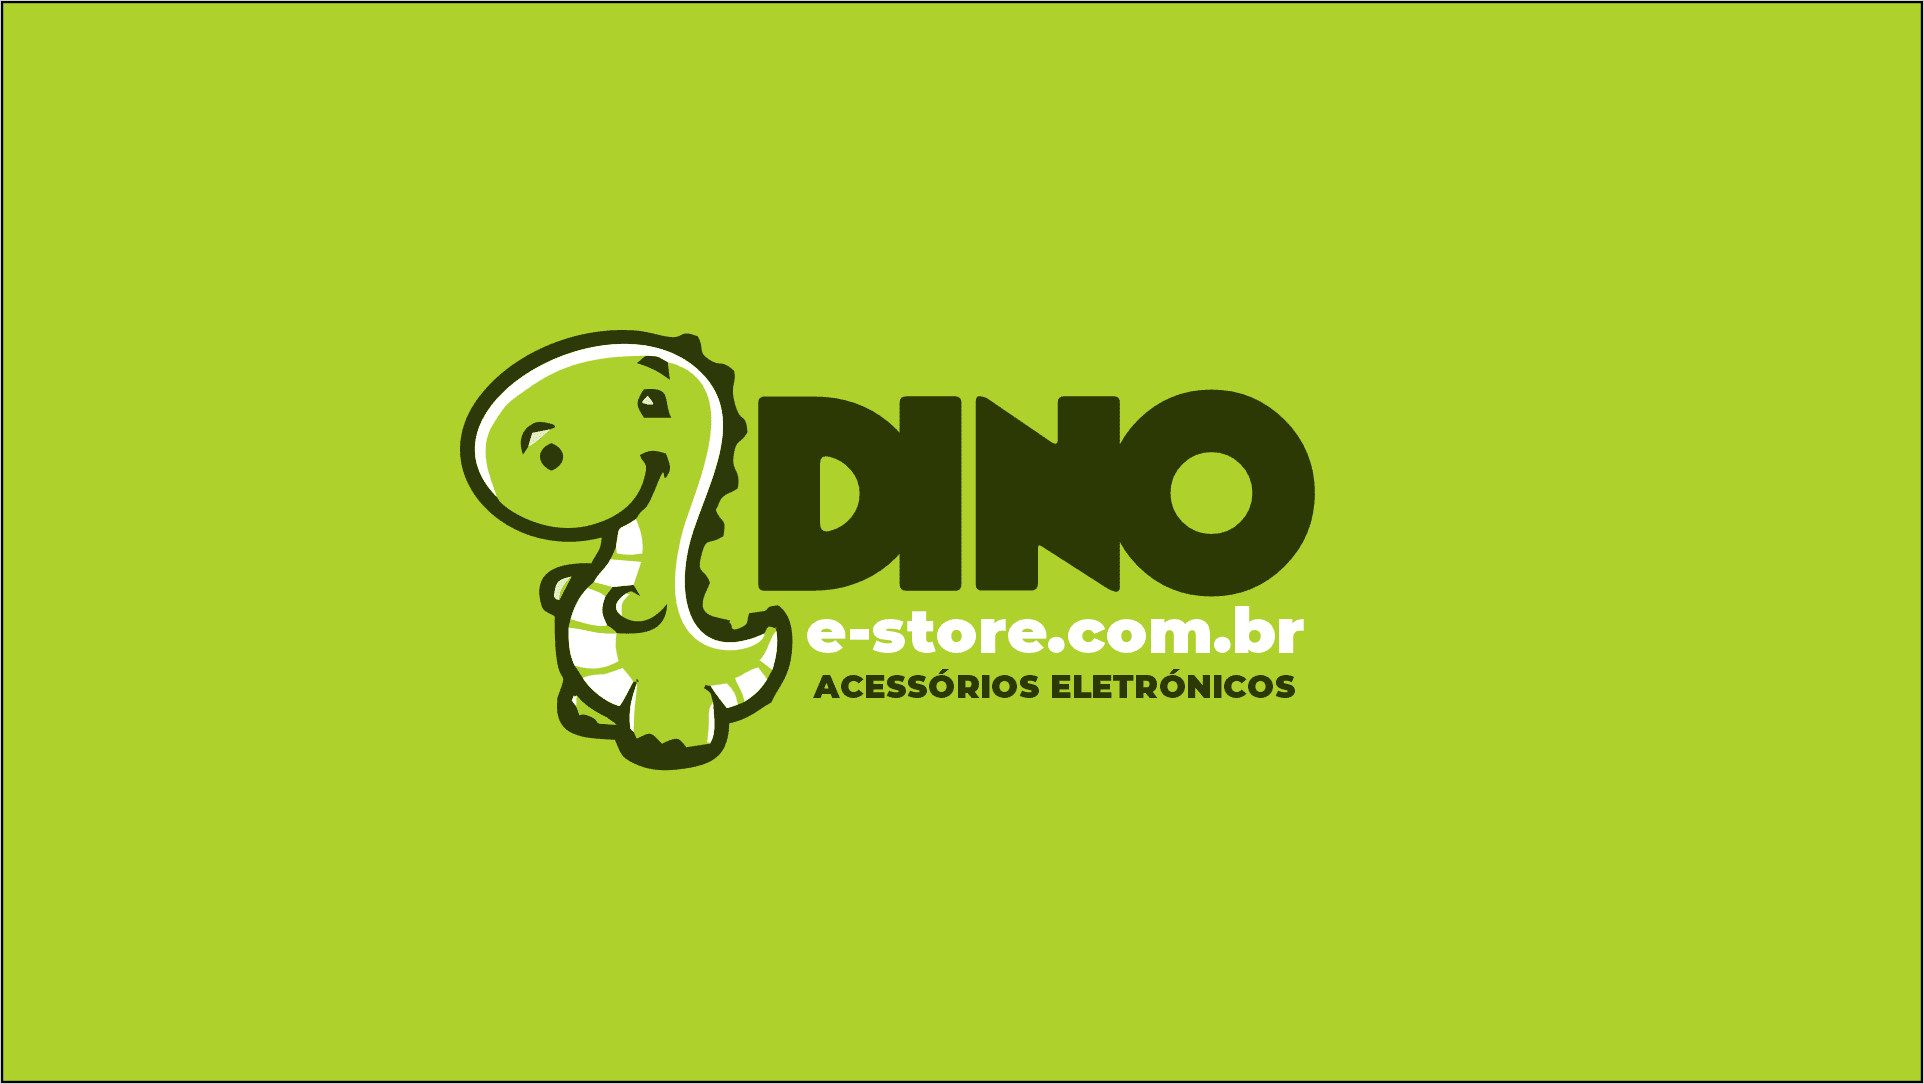 Dino e-store